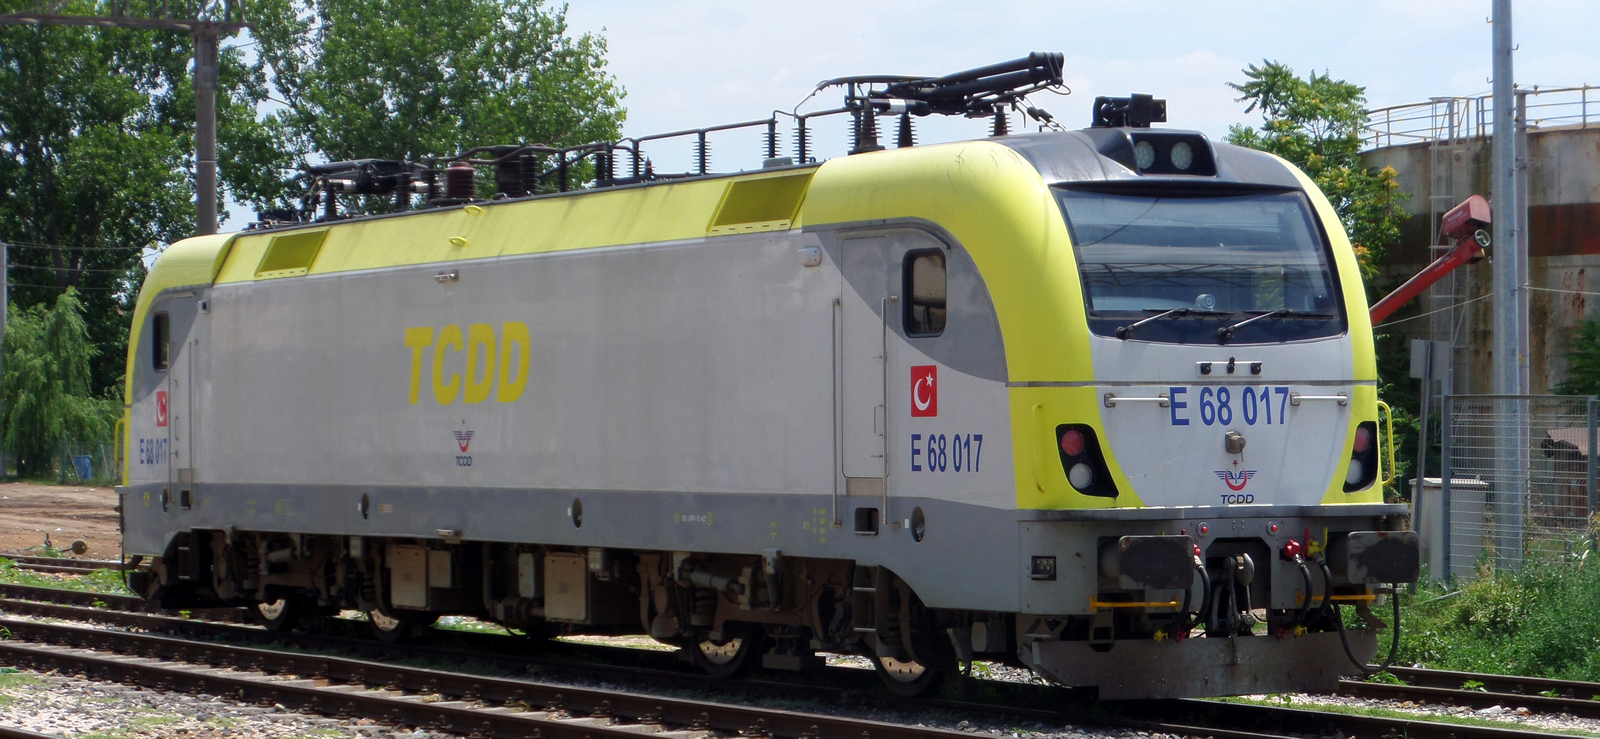 E 68017 in July 2016 in Alpullu